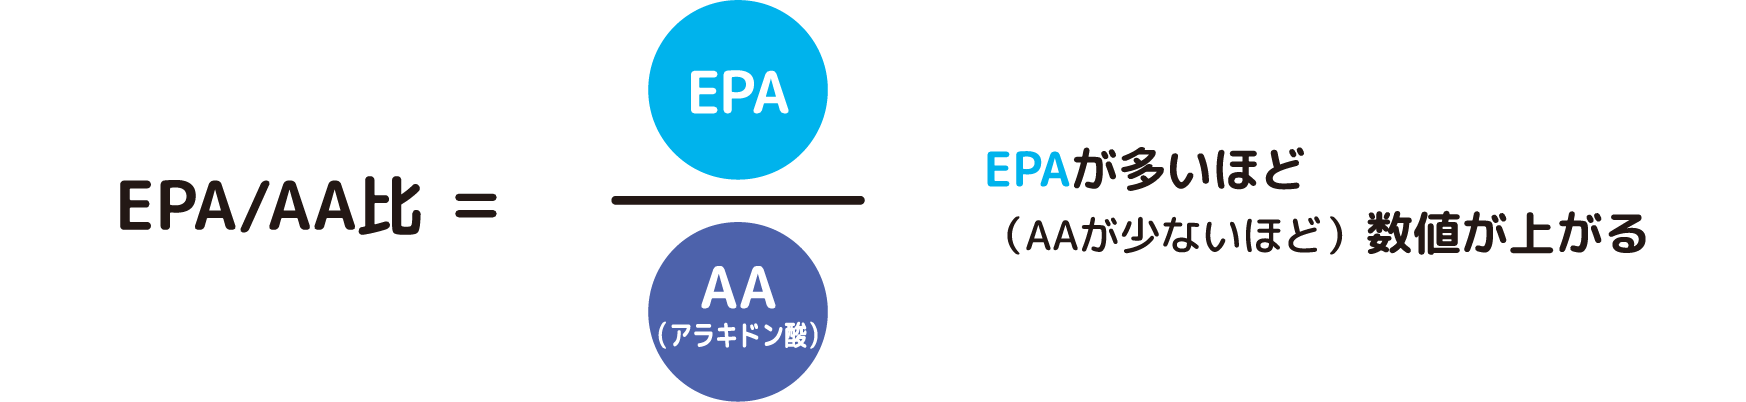 EPA/AA比